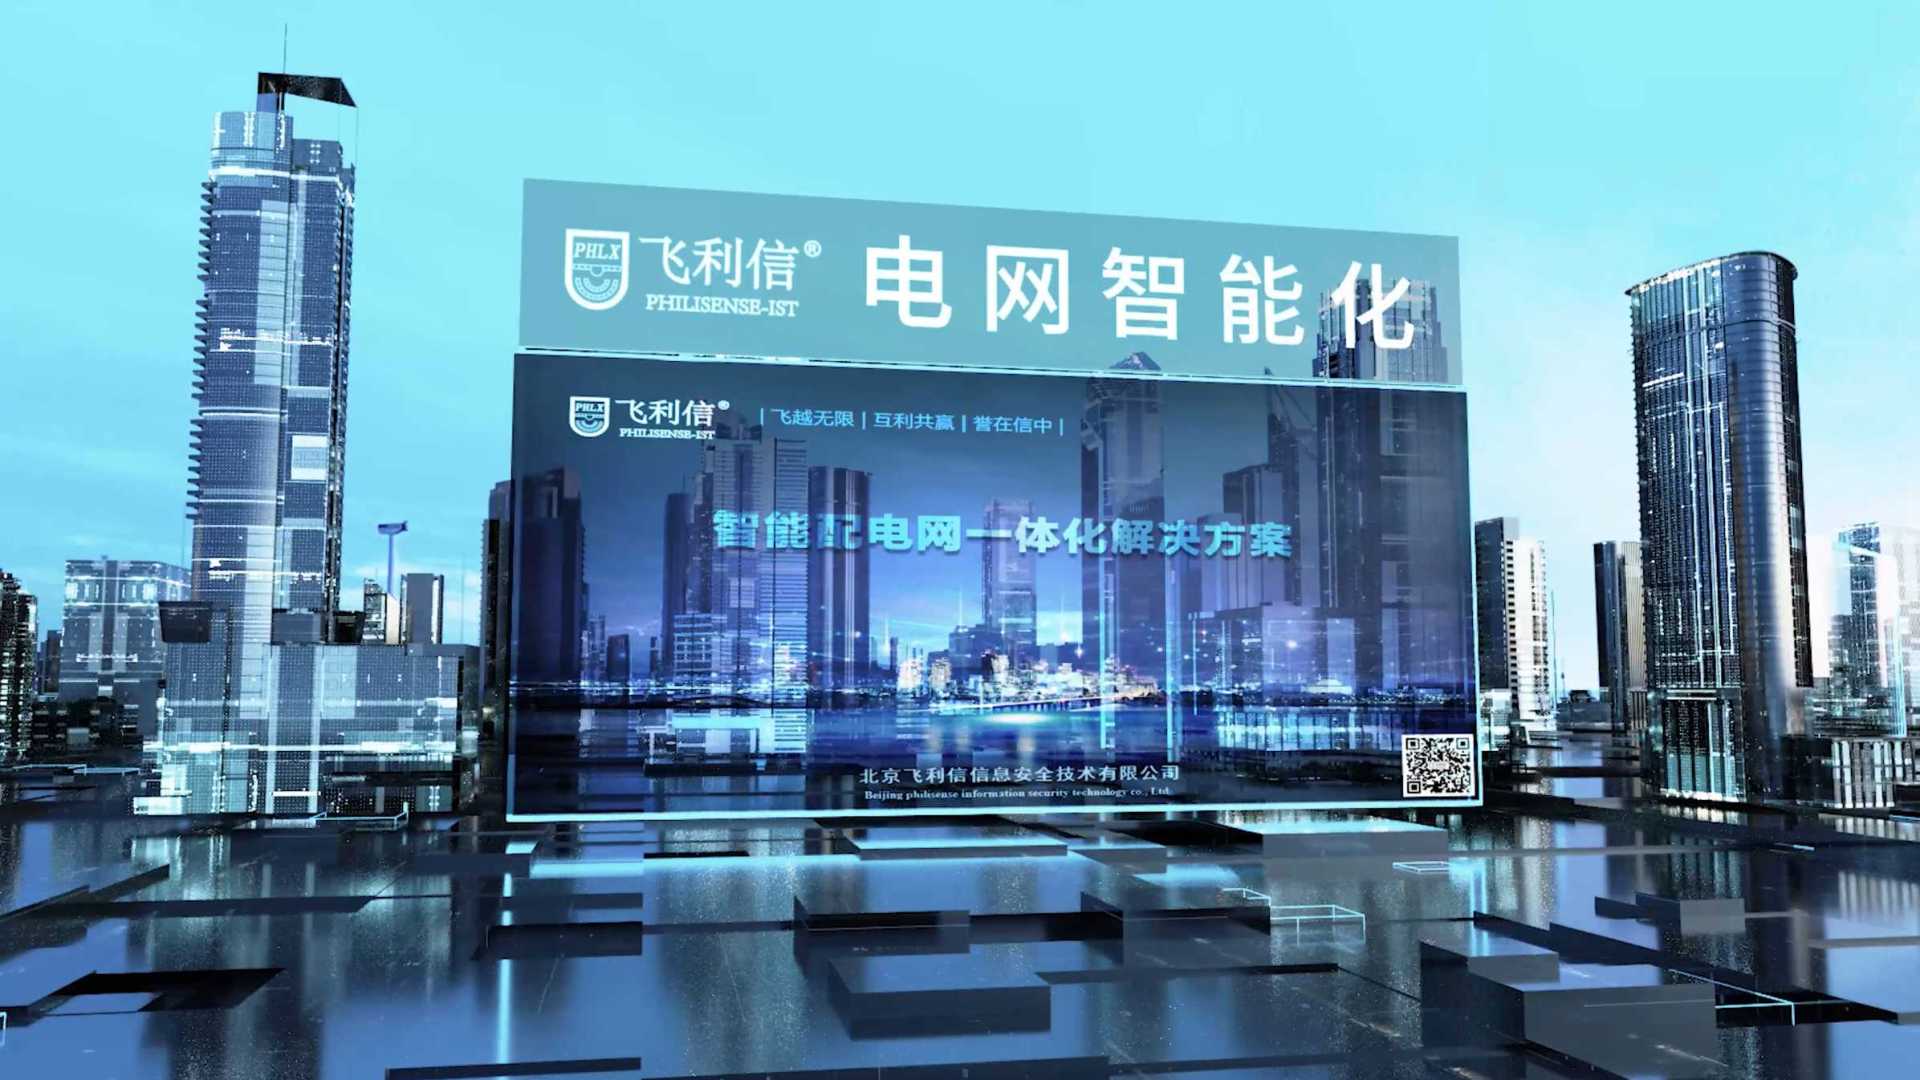 企业宣传片 | 北京飞利信信息安全技术有限公司